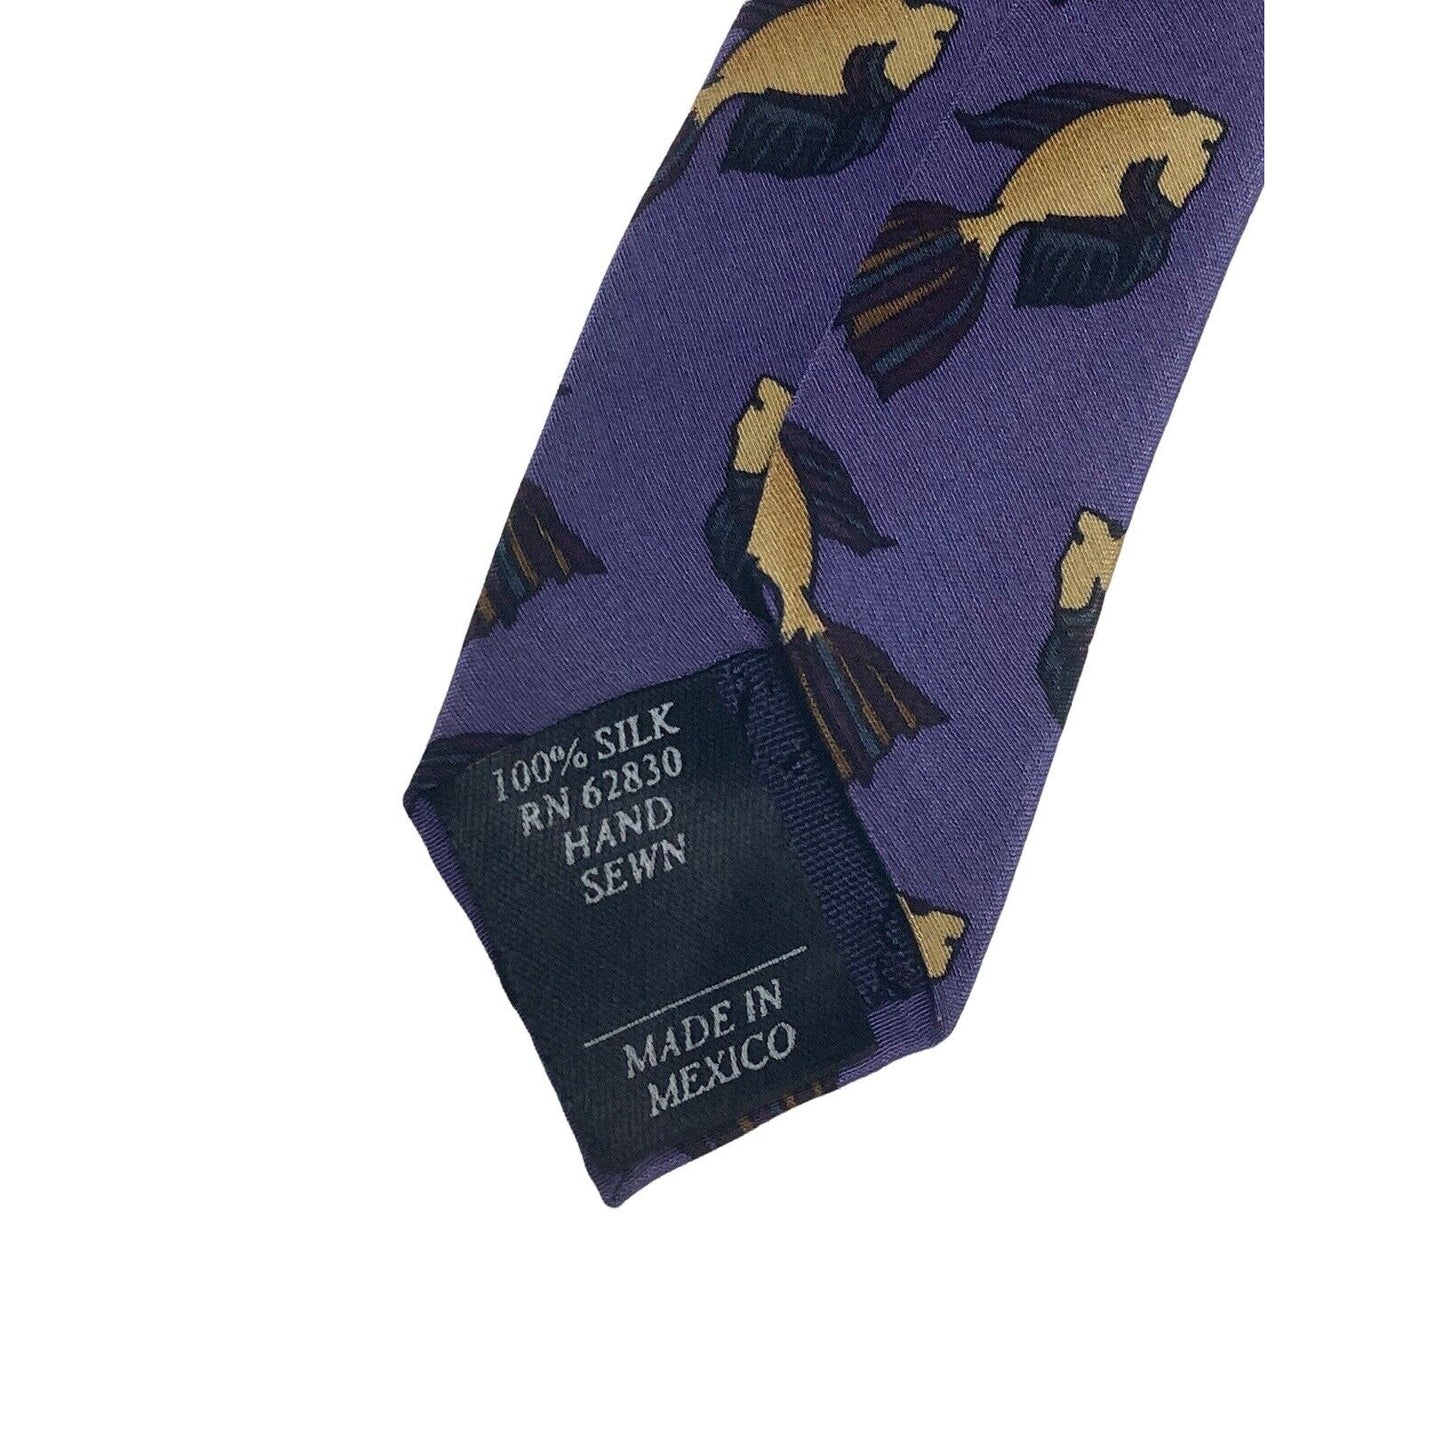 J Jerry Garcia Grateful Dead Fish Vintage Novelty Necktie 100% Silk Purple